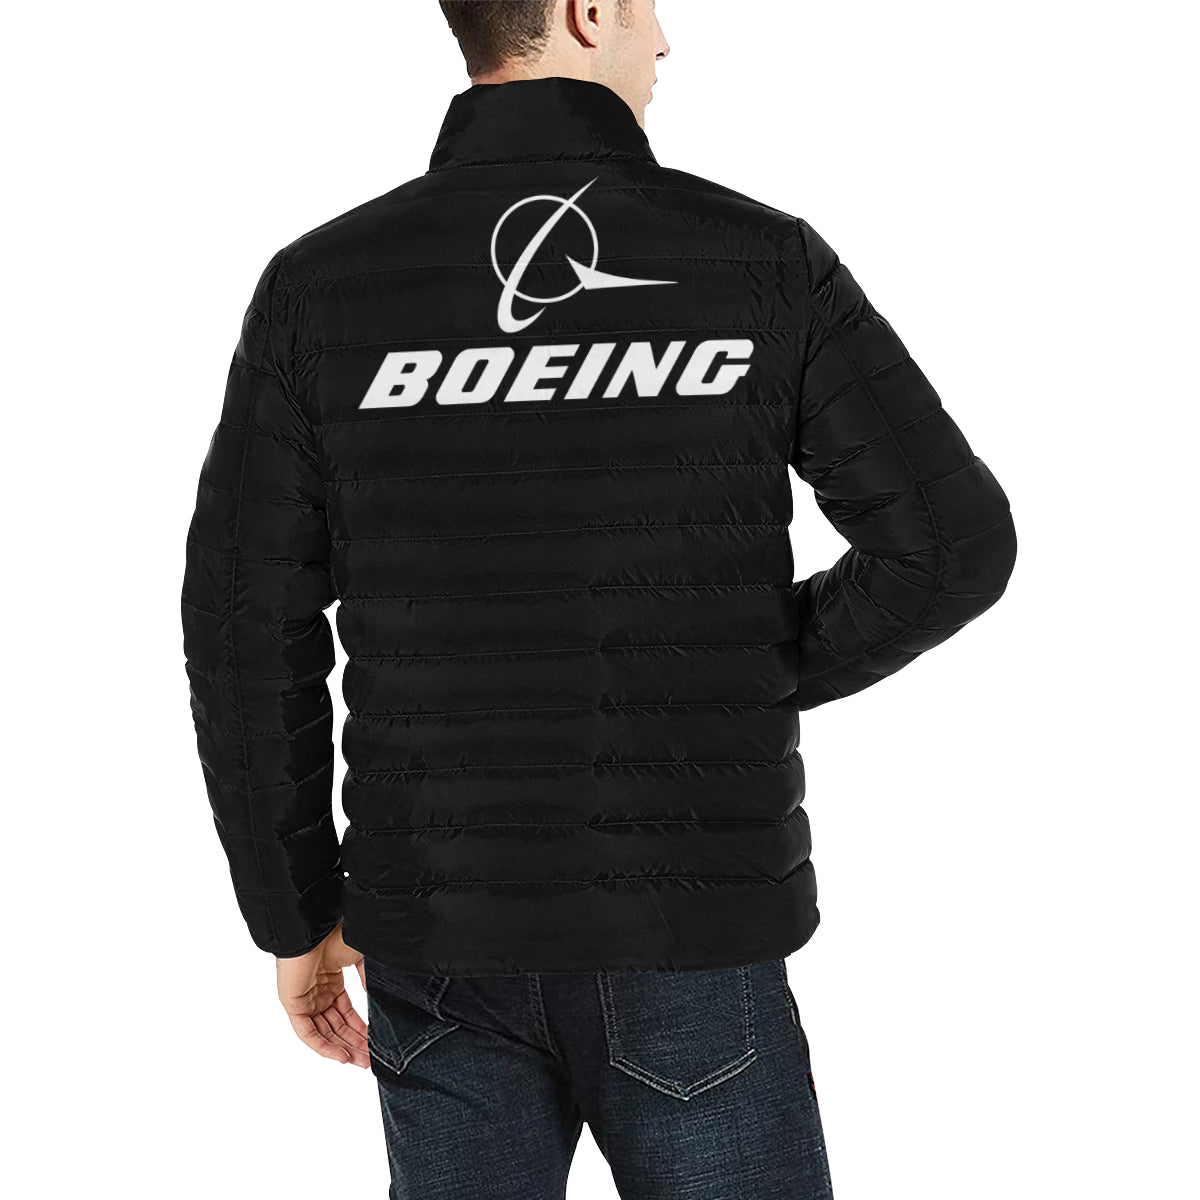 BOEING Men's Stand Collar Padded Jacket e-joyer